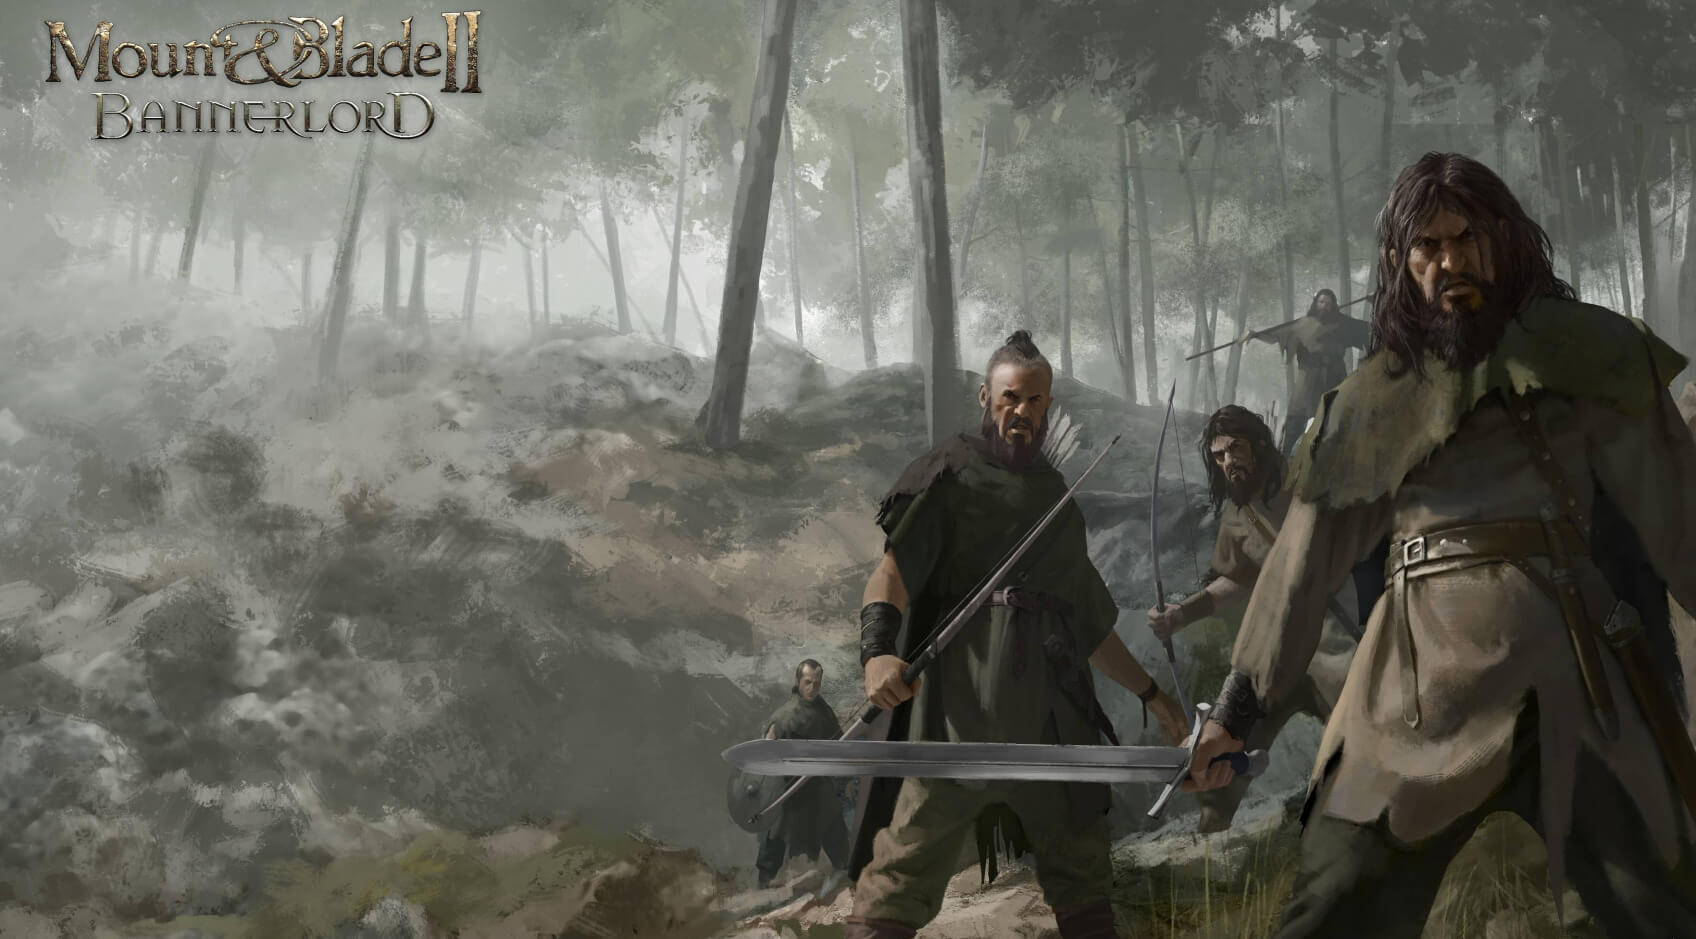 يوجد الآن Dismemberment Mod لـ Mount & Blade II: Bannerlord يمكنك تنزيله 31